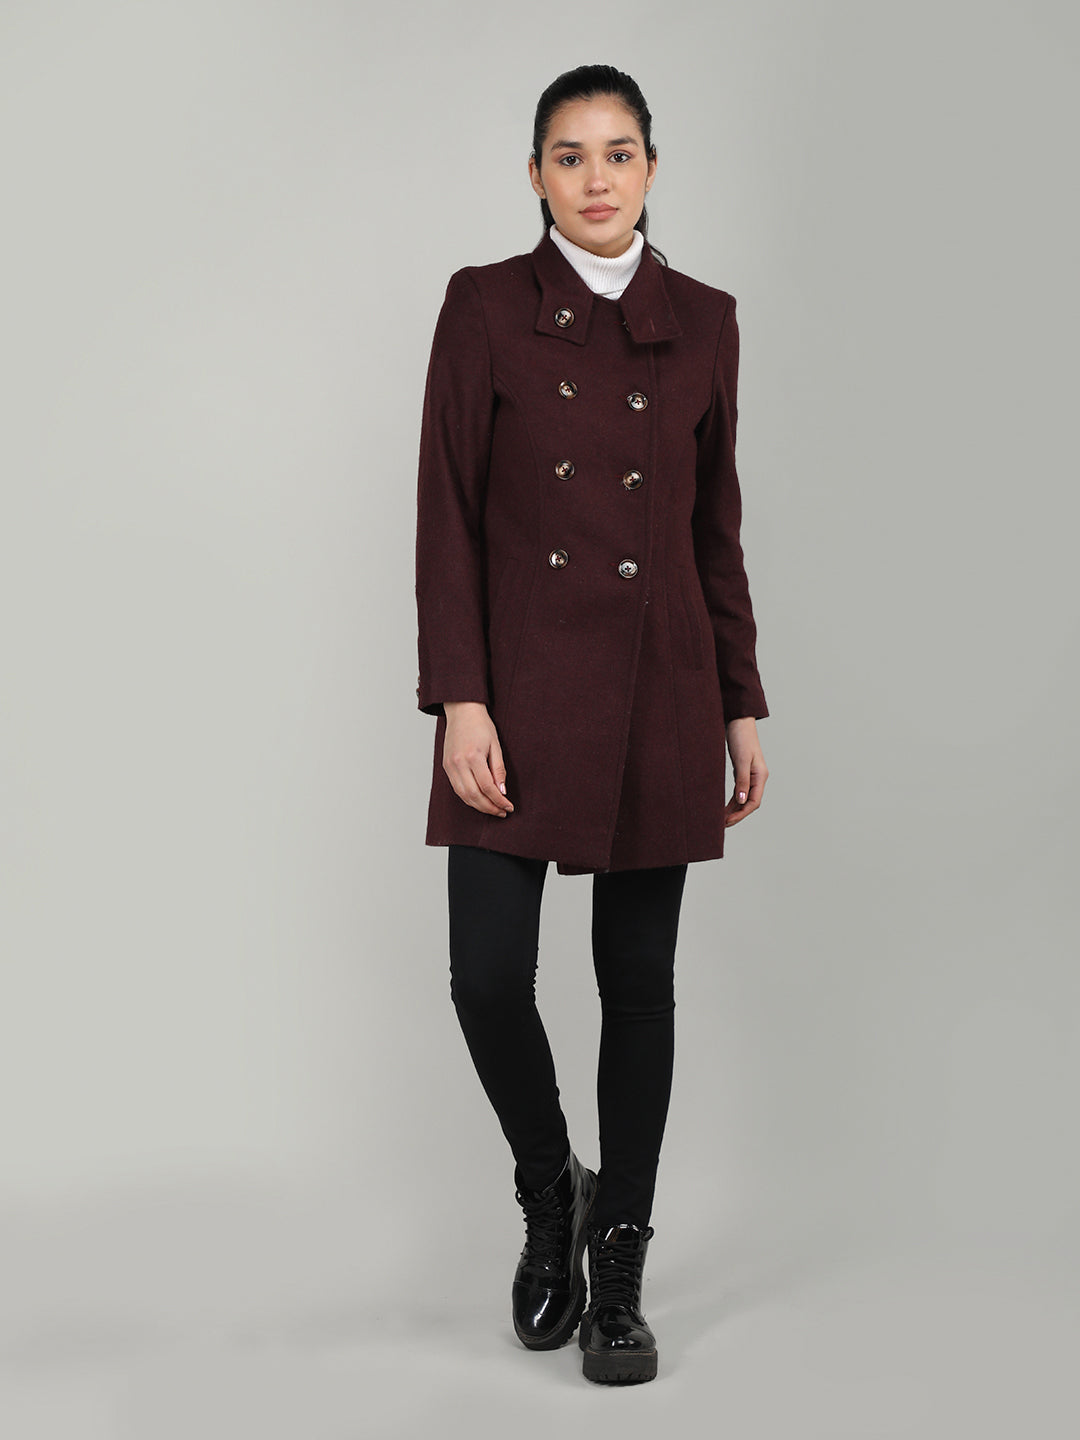 DLANXA Women Winter Wear Stylish Coat – Dlanxa